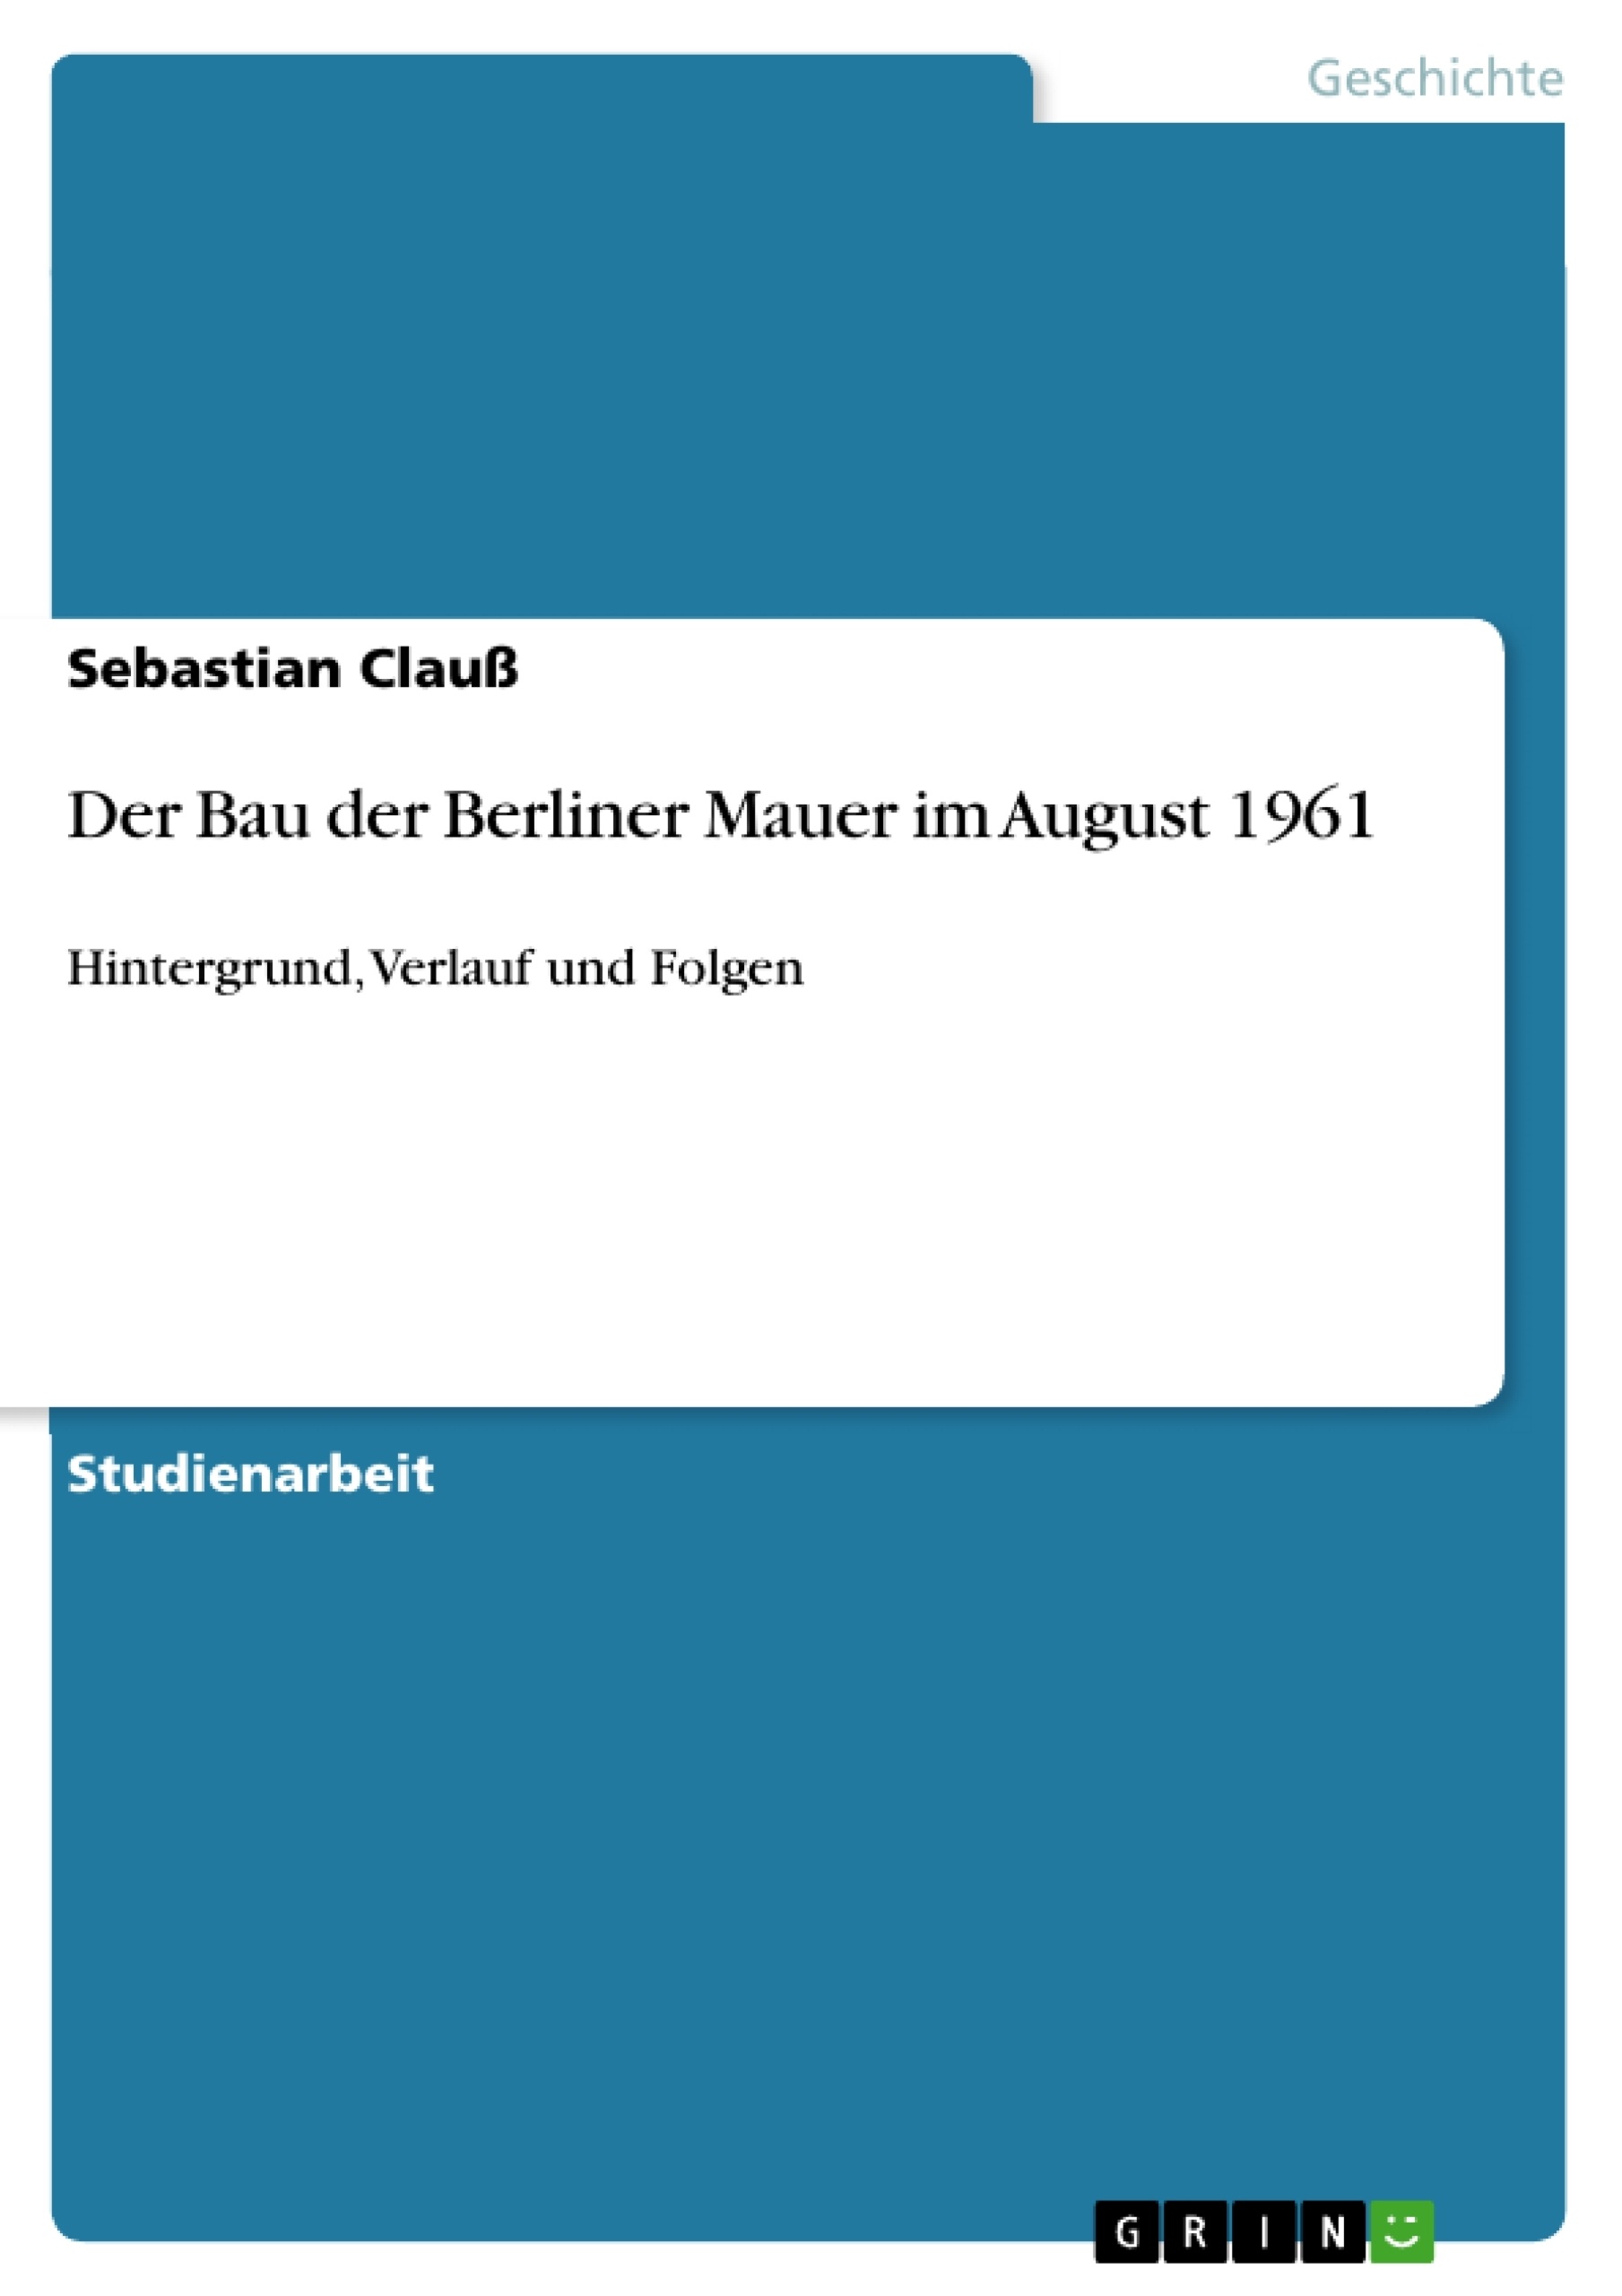 Title: Der Bau der Berliner Mauer im August 1961